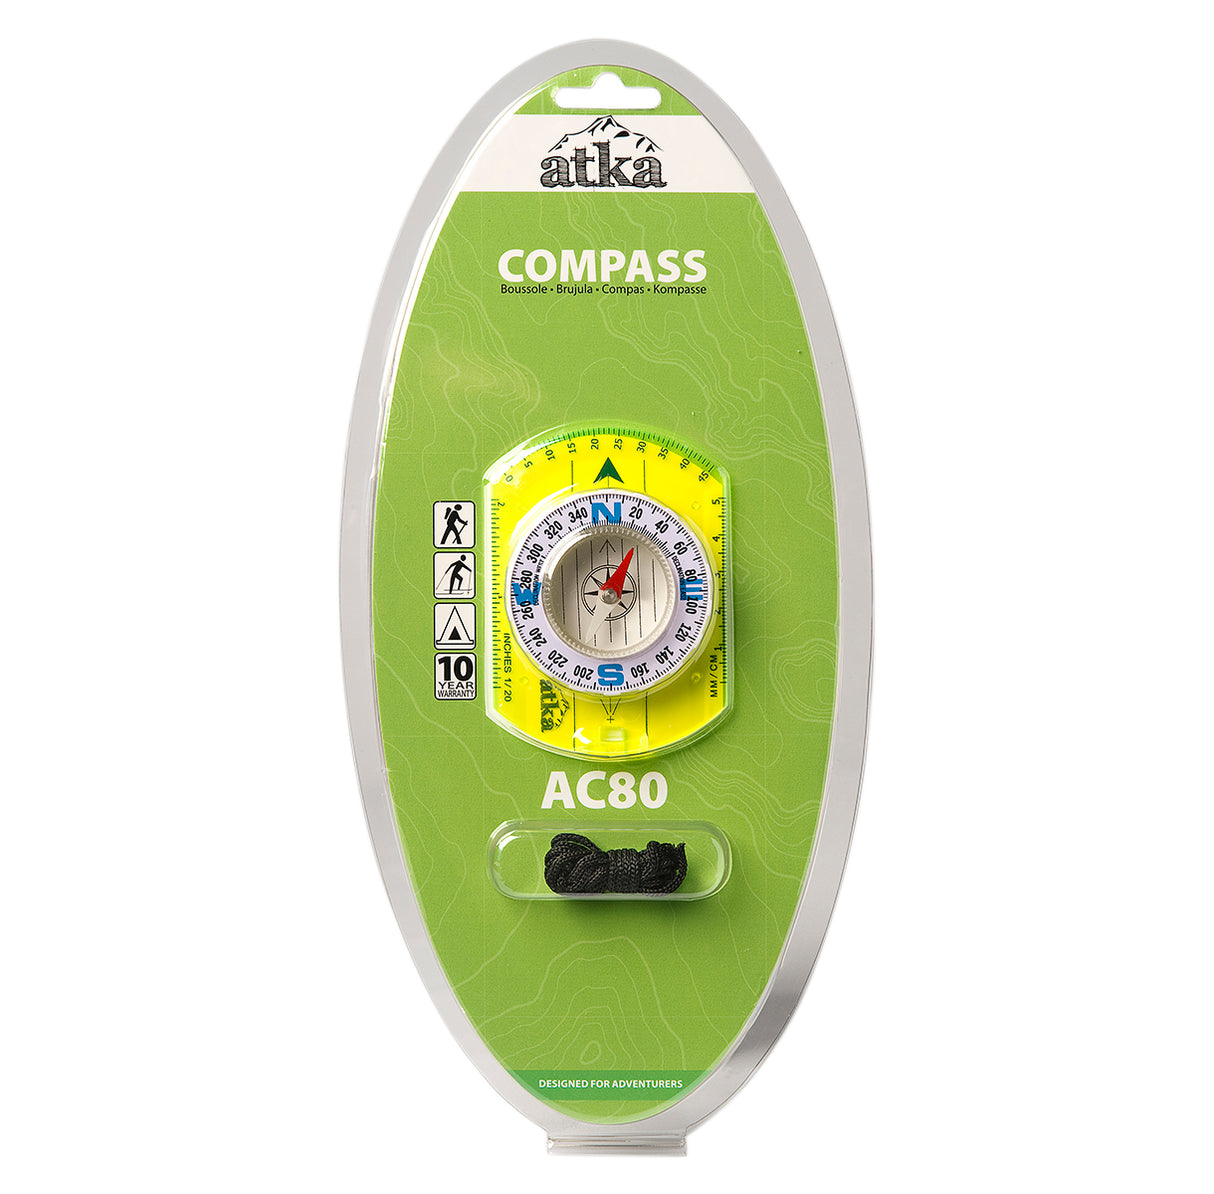 ATKA AC80 baseline compass